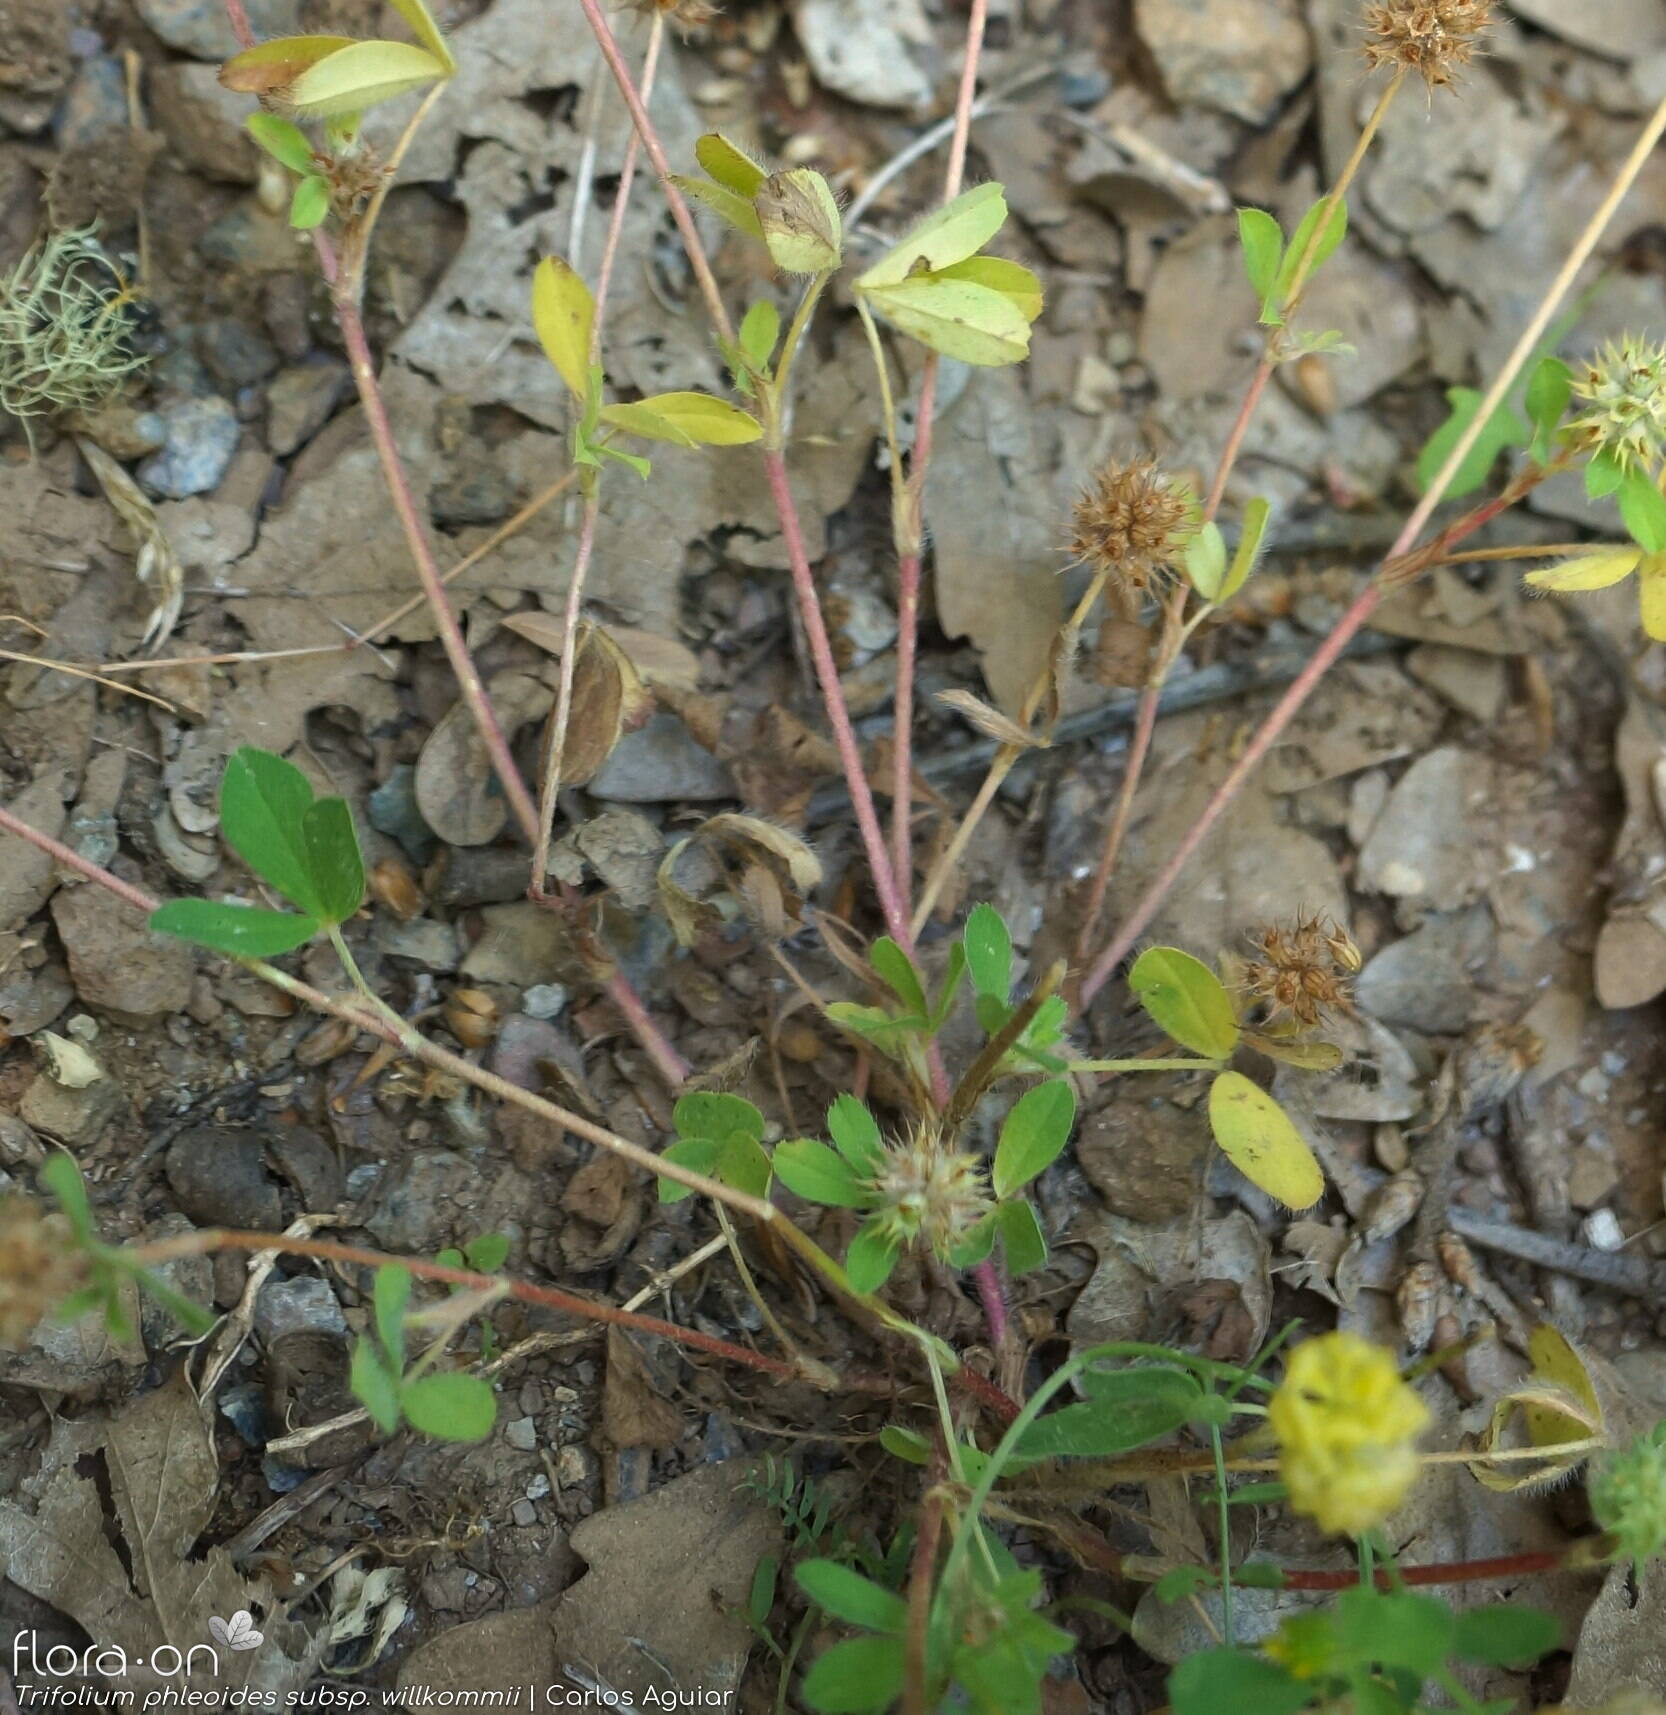 Trifolium phleoides willkommii - Folha (geral) | Carlos Aguiar; CC BY-NC 4.0